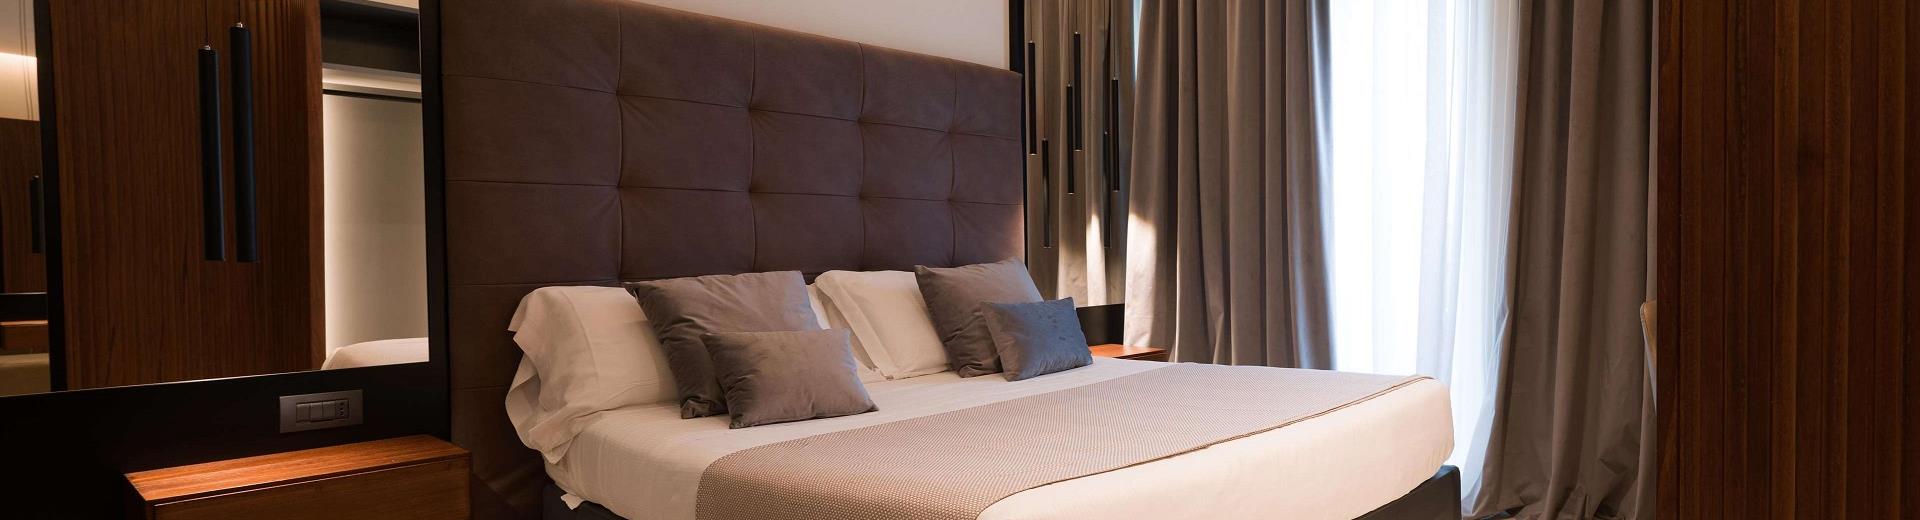 Per il tuo soggiorno a Napoli, scegli Hotel Ferrari e scopri il comfort unico delle nostre camere!